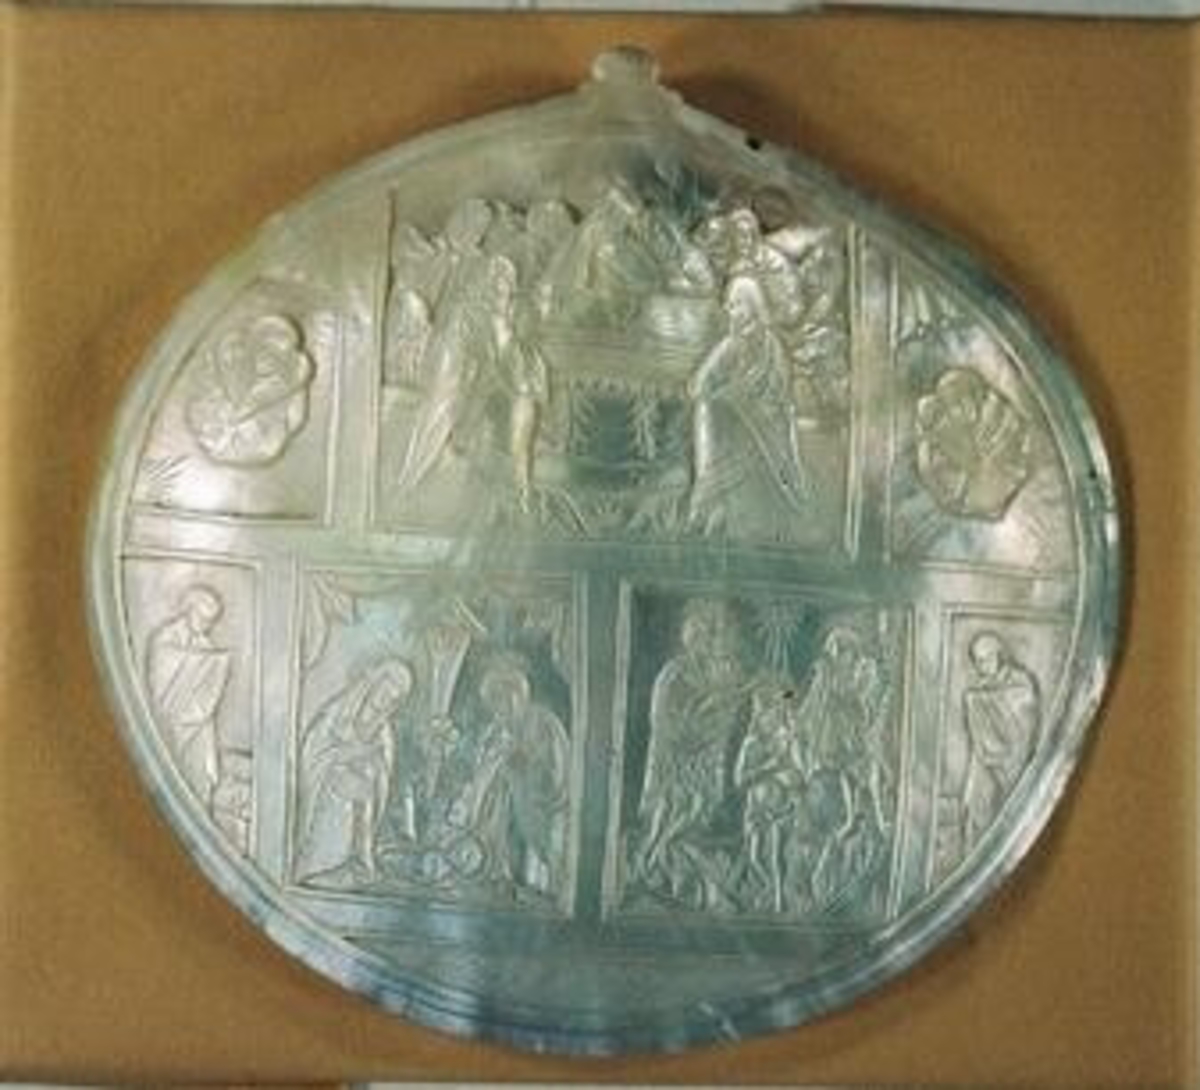 En buktig pärlemorplatta varpå tavlor ur Kristi liv från Betlehem

Avd. Österländska föremål i Ahléns tryckta katalog.